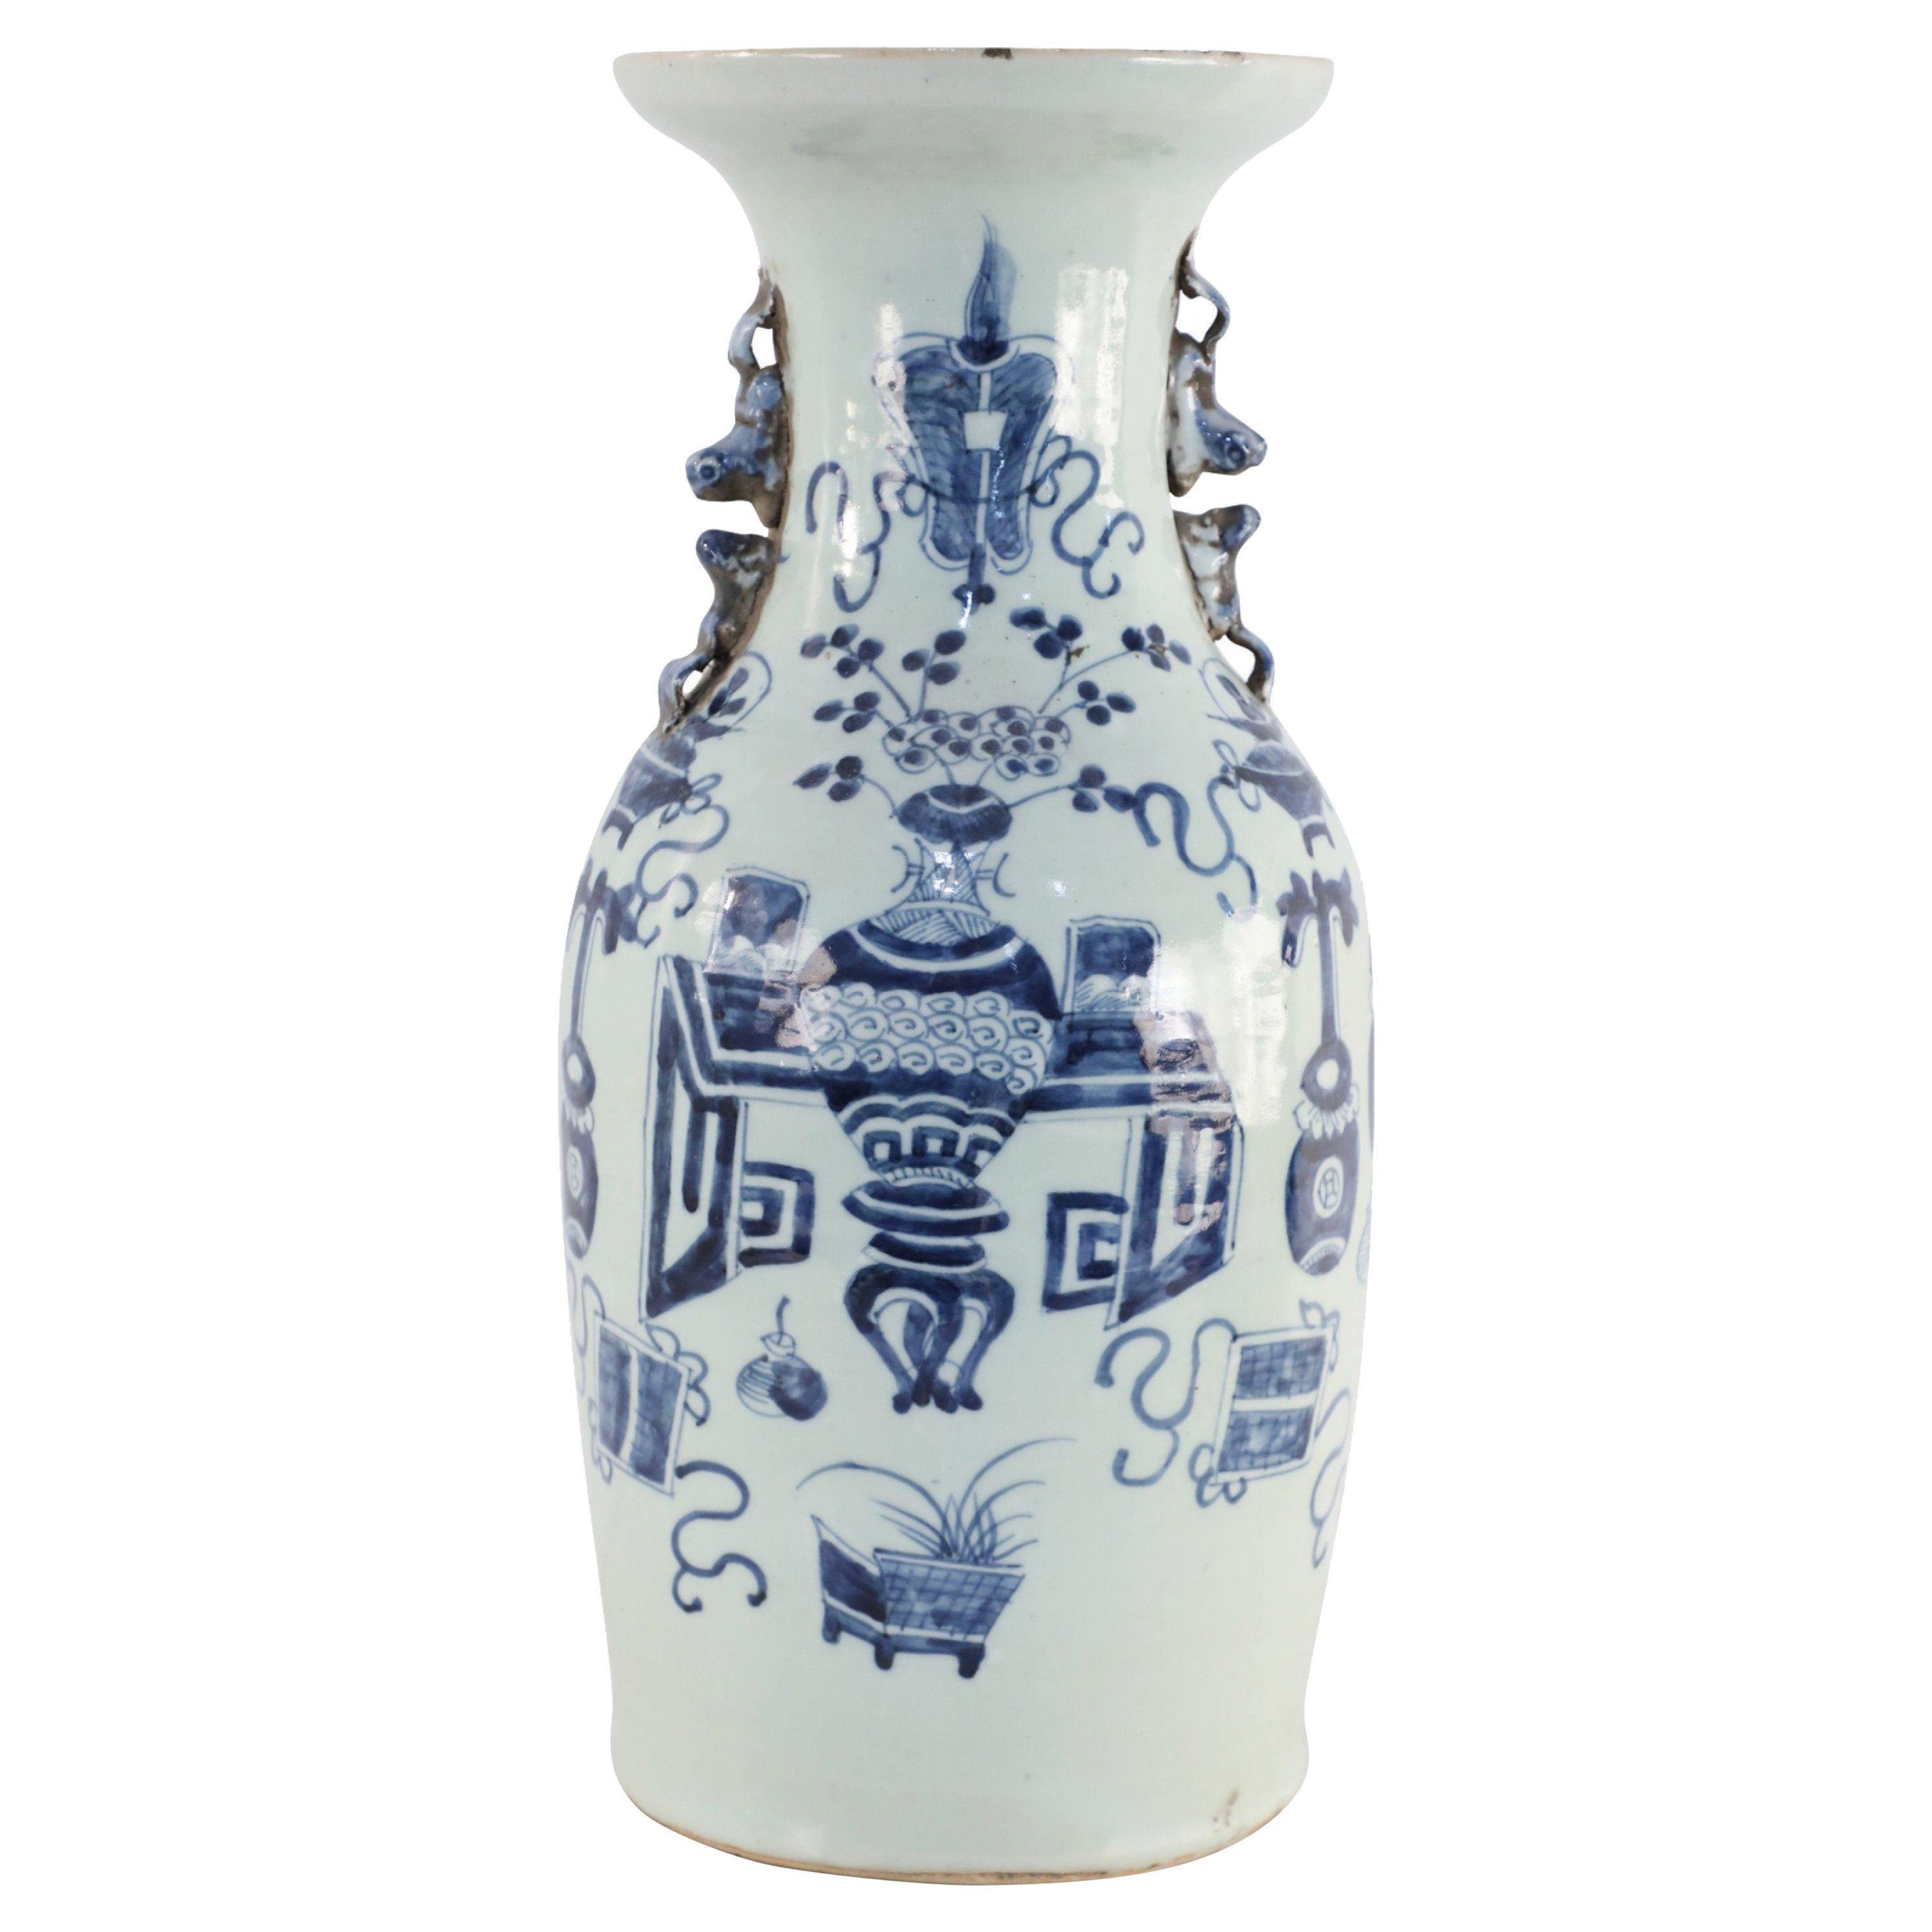 Urne chinoise en porcelaine à motifs blancs et bleu marine avec poignée en forme d'urne